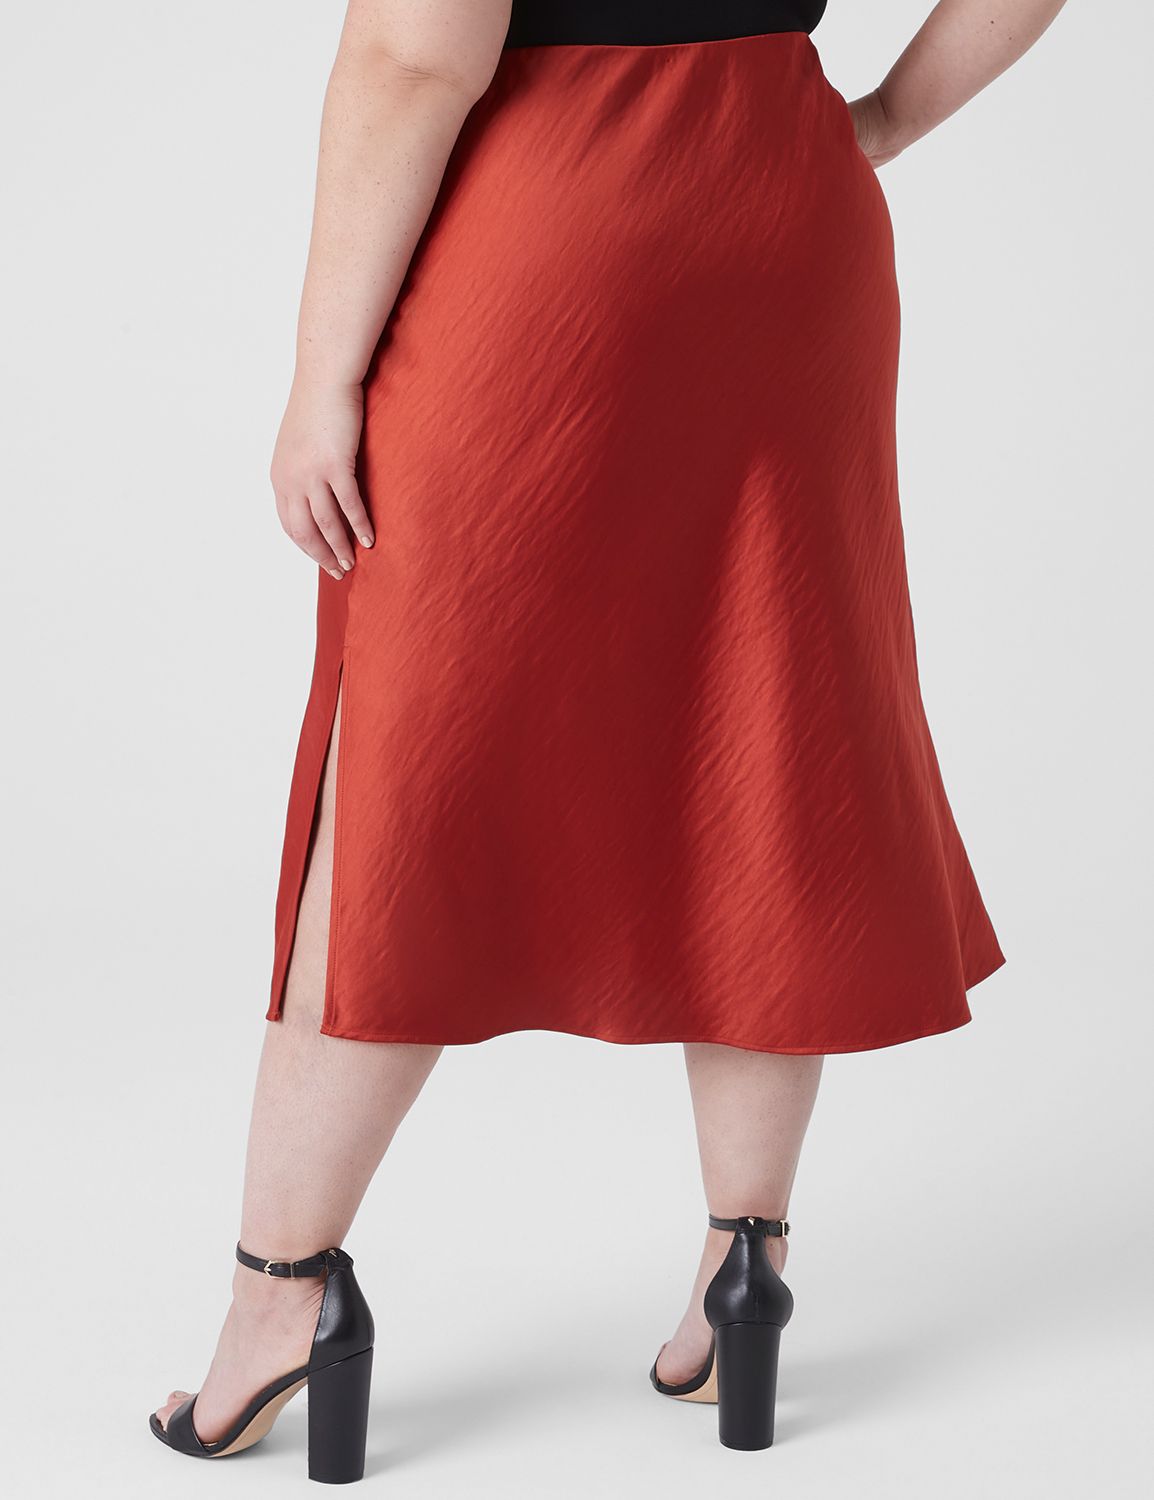 Cupid Shapewear Sleek Essentials High Waist Shaper Slip Skirt – Dreamz  Lingerie